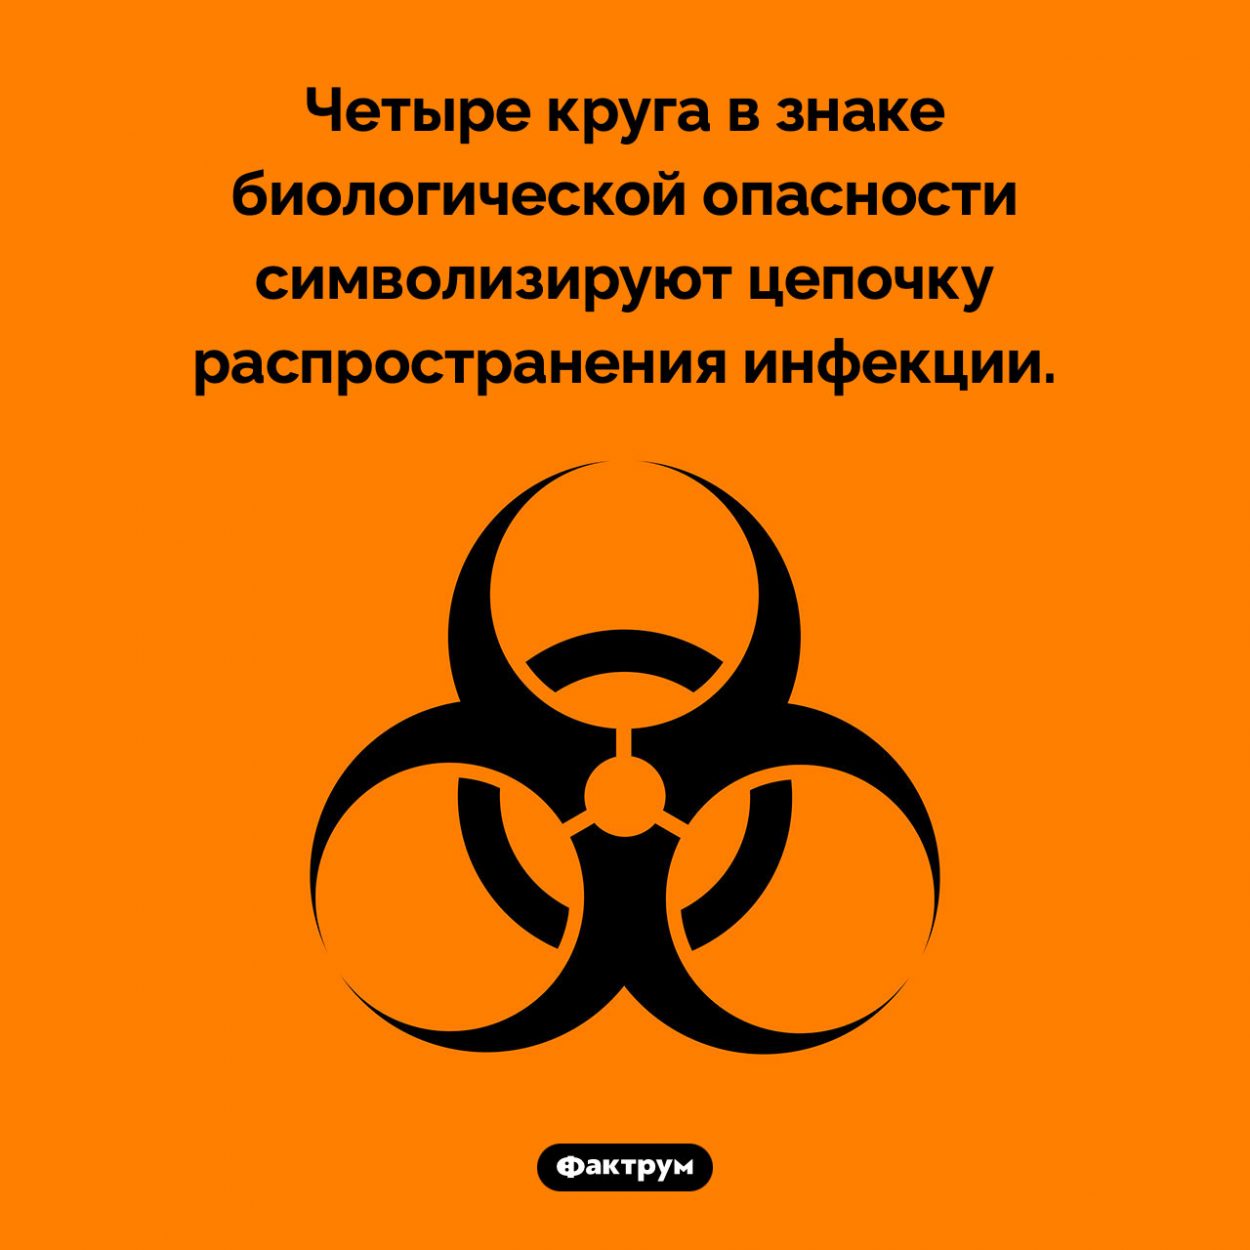 Знак биологической опасности. Четыре круга в знаке биологической опасности символизируют цепочку распространения инфекции.